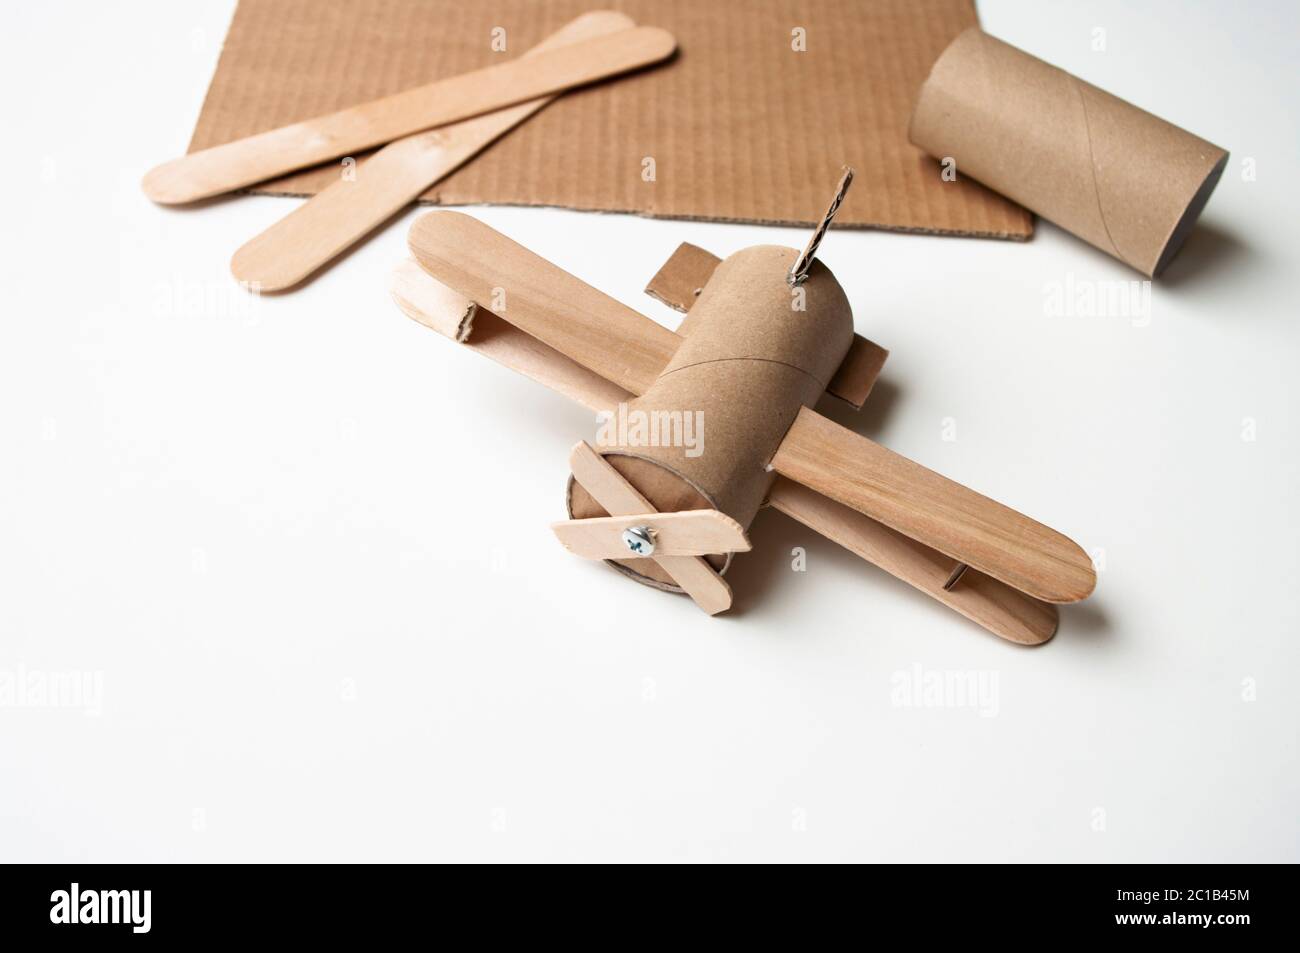 Avion de papier toilette rouleau et bâtons. Bricolage pour enfants. Jouet d' avion, décoration chambre d'enfants Photo Stock - Alamy